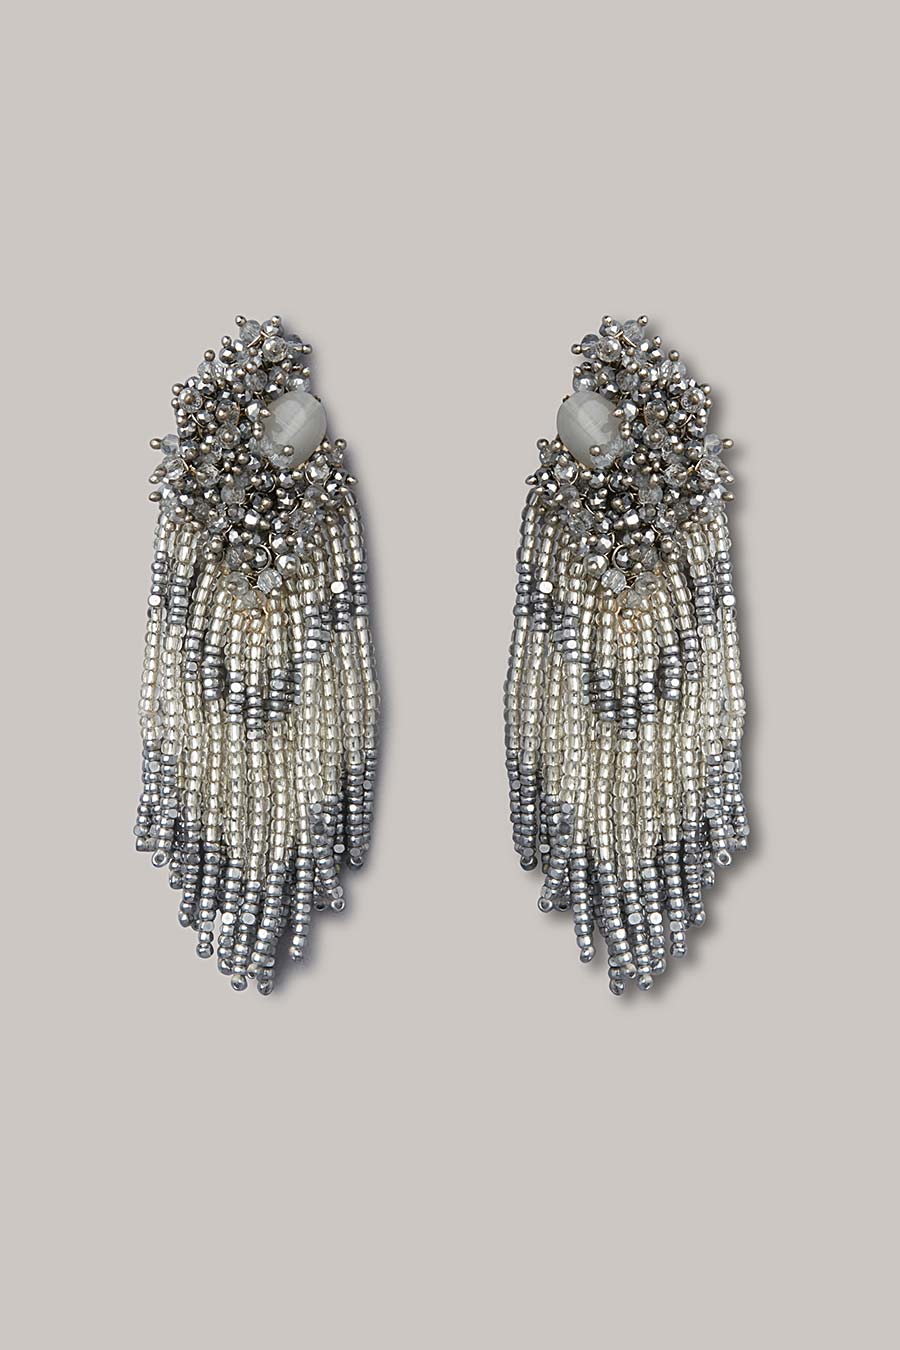 Silver Semi-Precious Stone Dangler Earrings